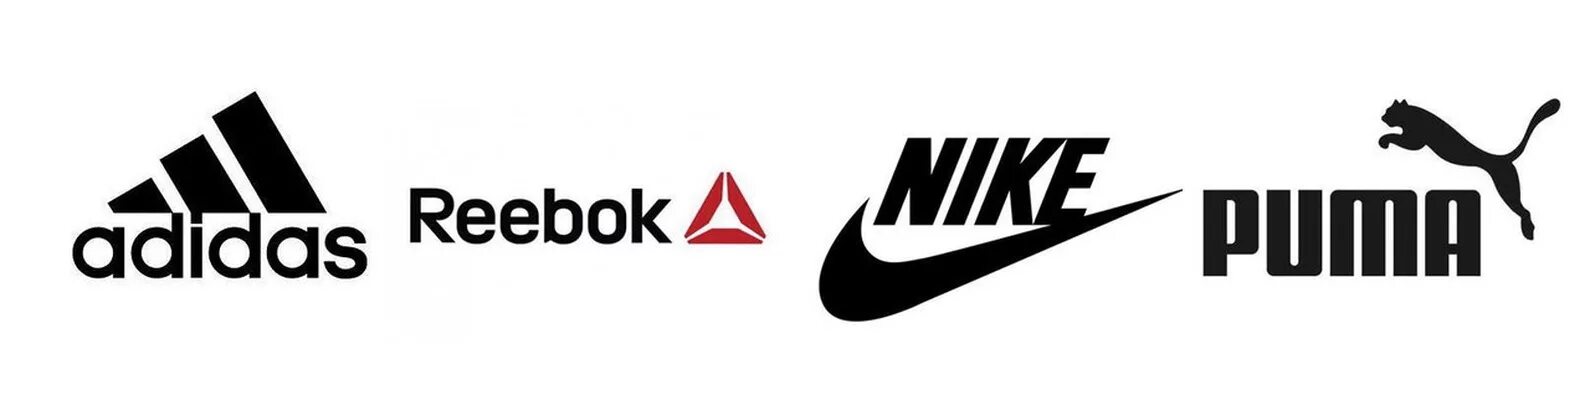 Рибок или найк. Nike adidas Reebok. Найк адидас Пума рибок. Бренды адидас найк рибок. Спортивные фирмы логотипы.